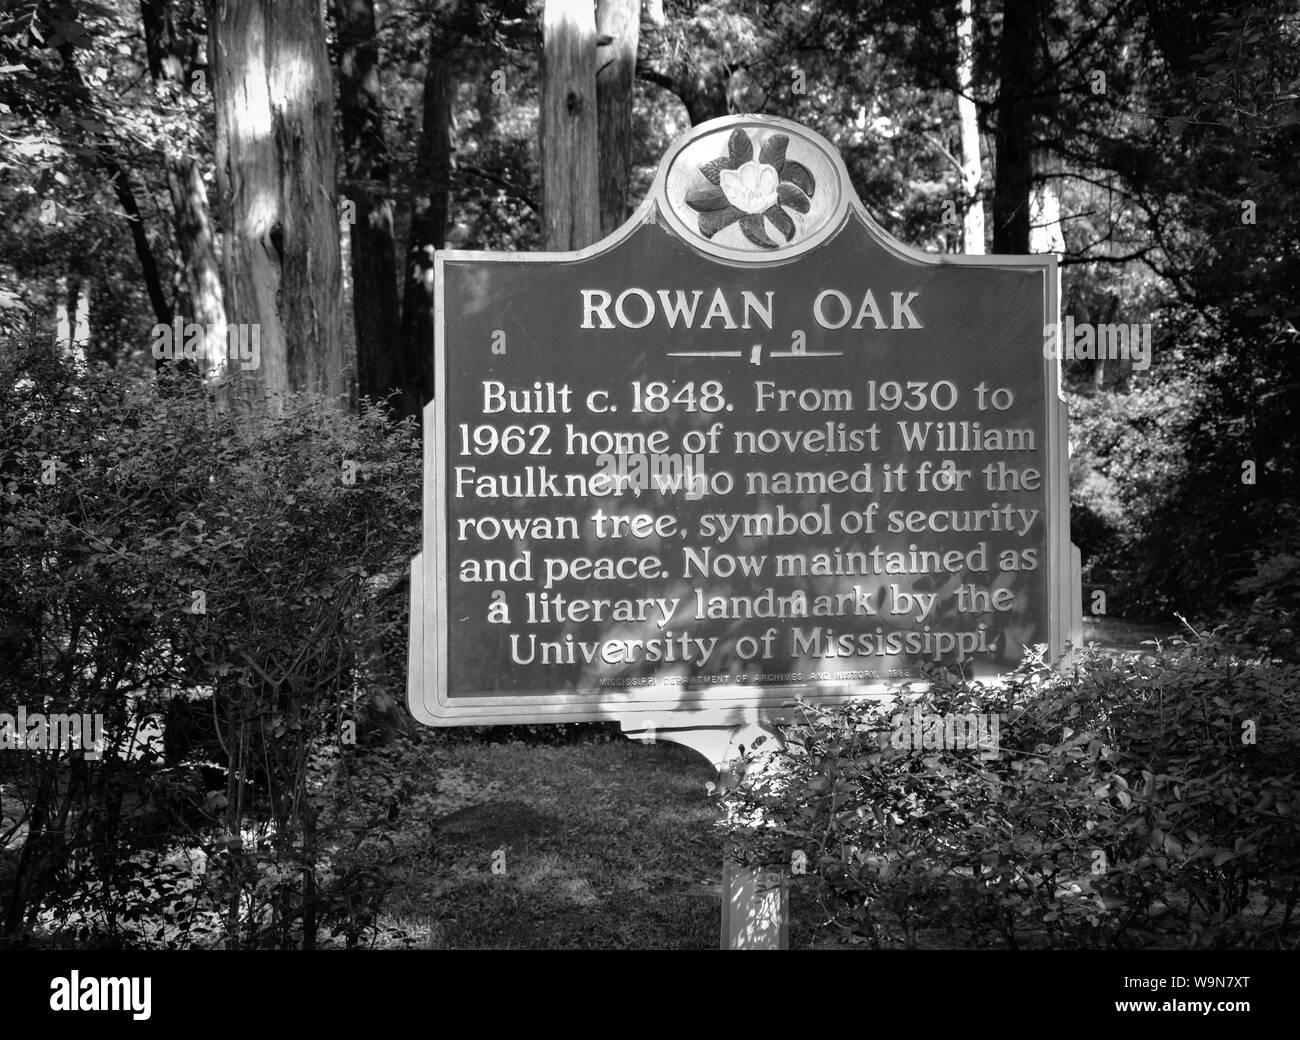 Un monument littéraire signe pour Rowan Oak, l'accueil d'un prix Pulitzer romancier William Faulkner, Oxford, MS, États-Unis d'Amérique, Banque D'Images